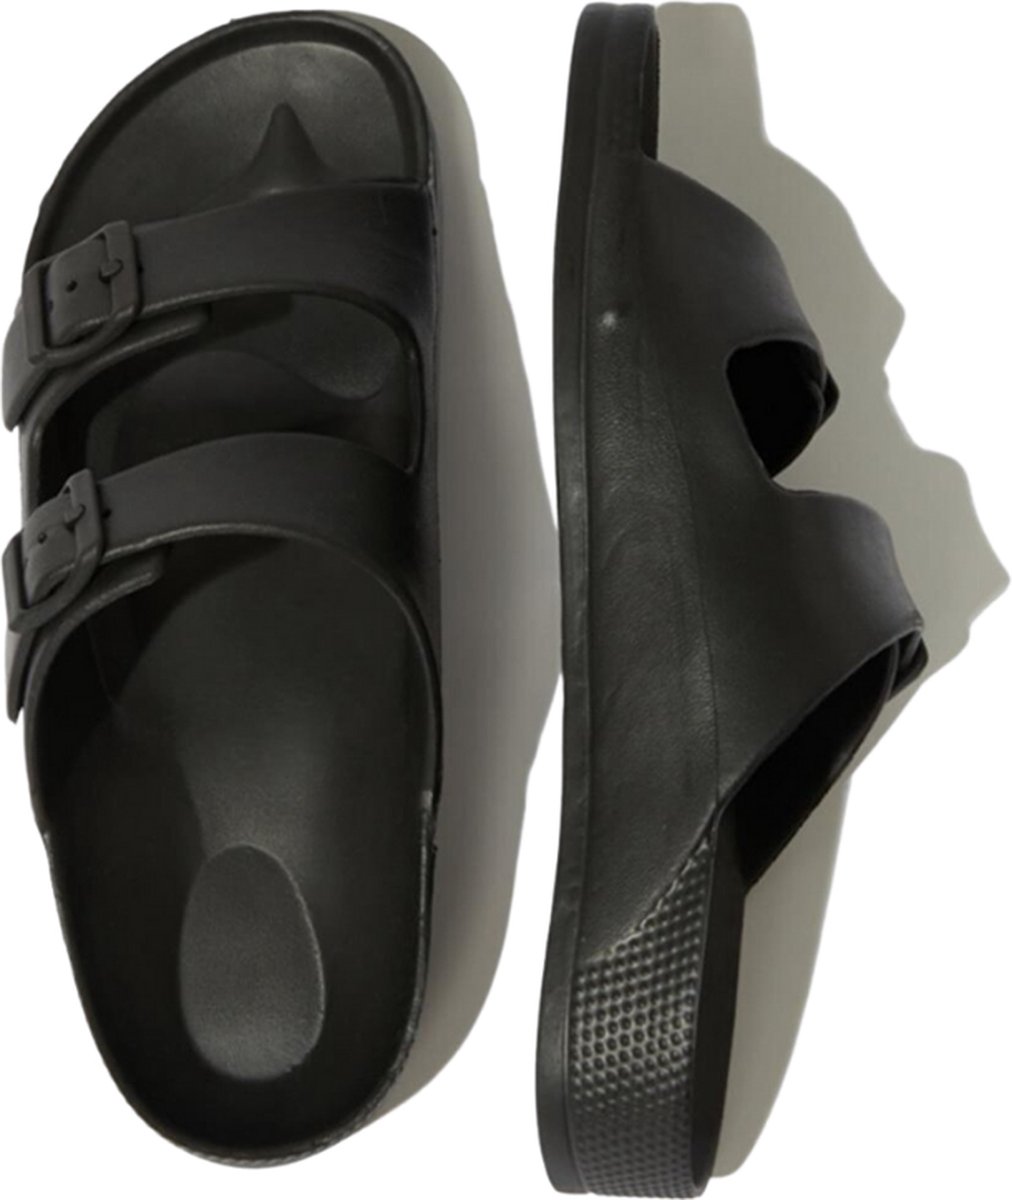 Zwarte slipper - unisex slipper - maat 42 - regular fit - EVA